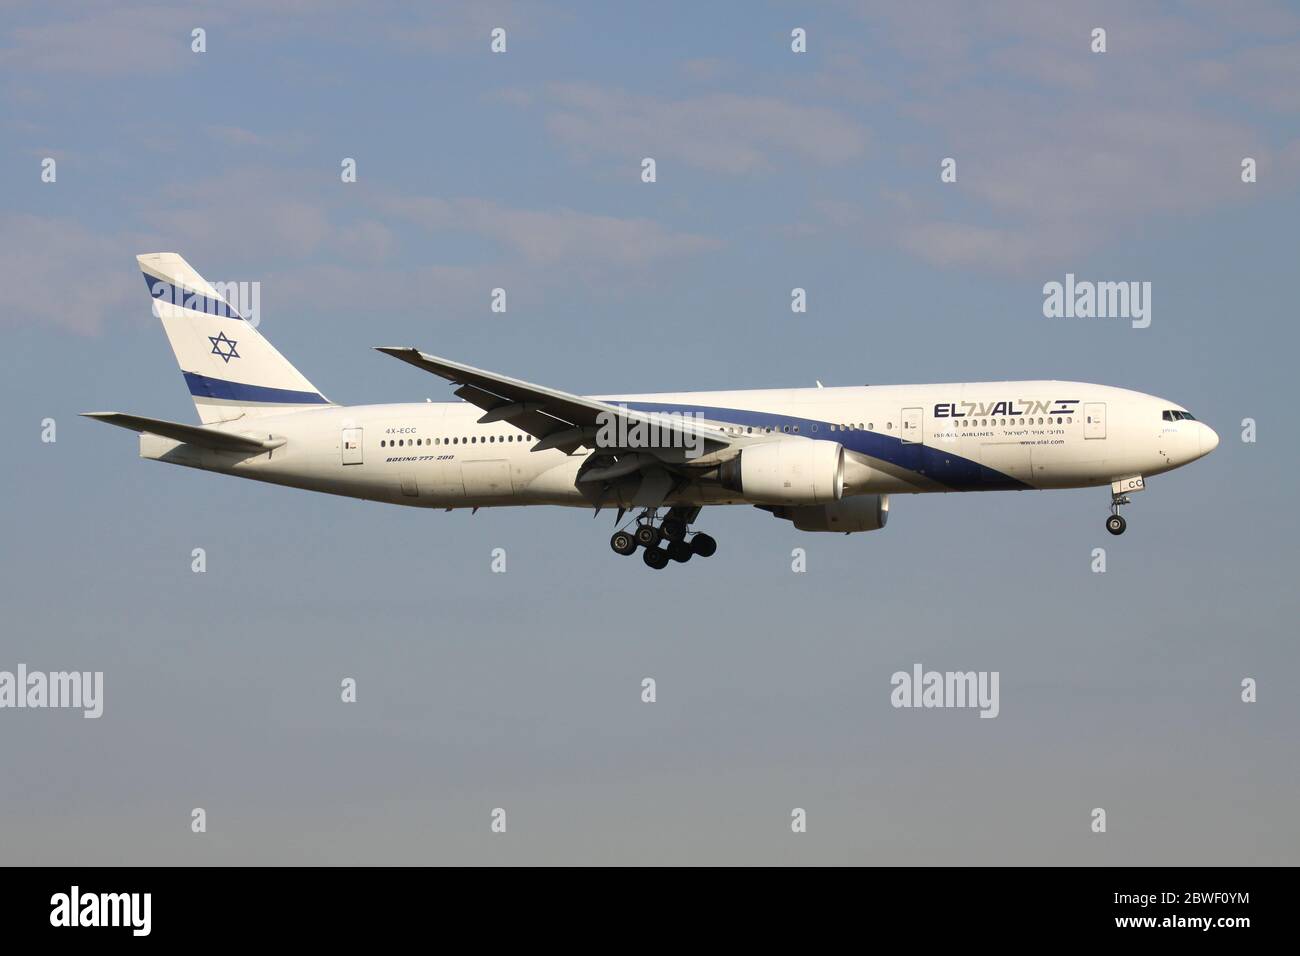 El Al Israel Airlines Boeing 777-200 avec enregistrement 4X-ECC en finale courte pour l'aéroport d'Amsterdam Schiphol. Banque D'Images